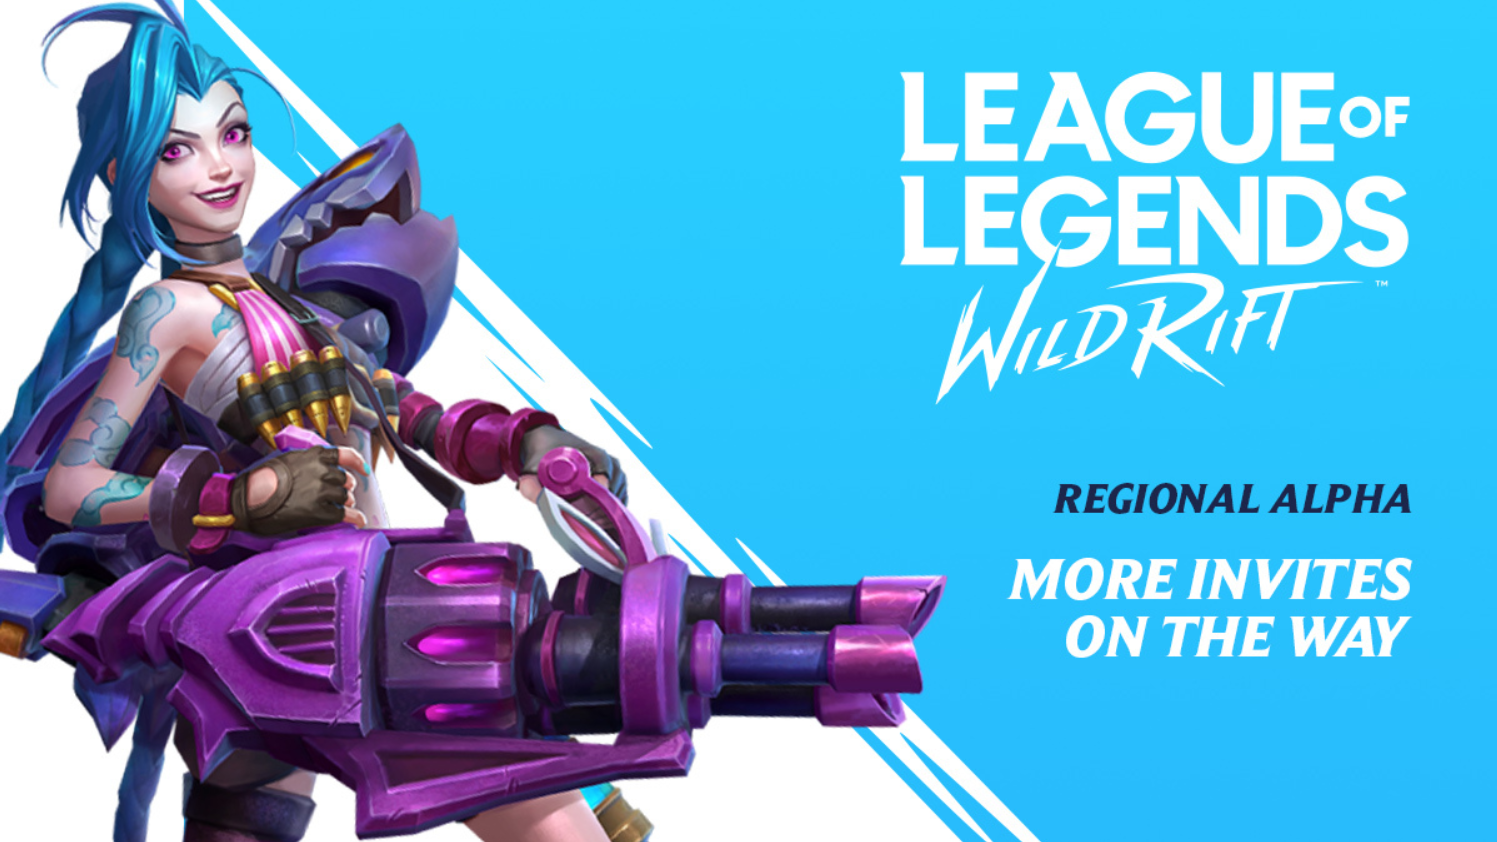 Global League of Legends: Wild Rift app downloads 2023